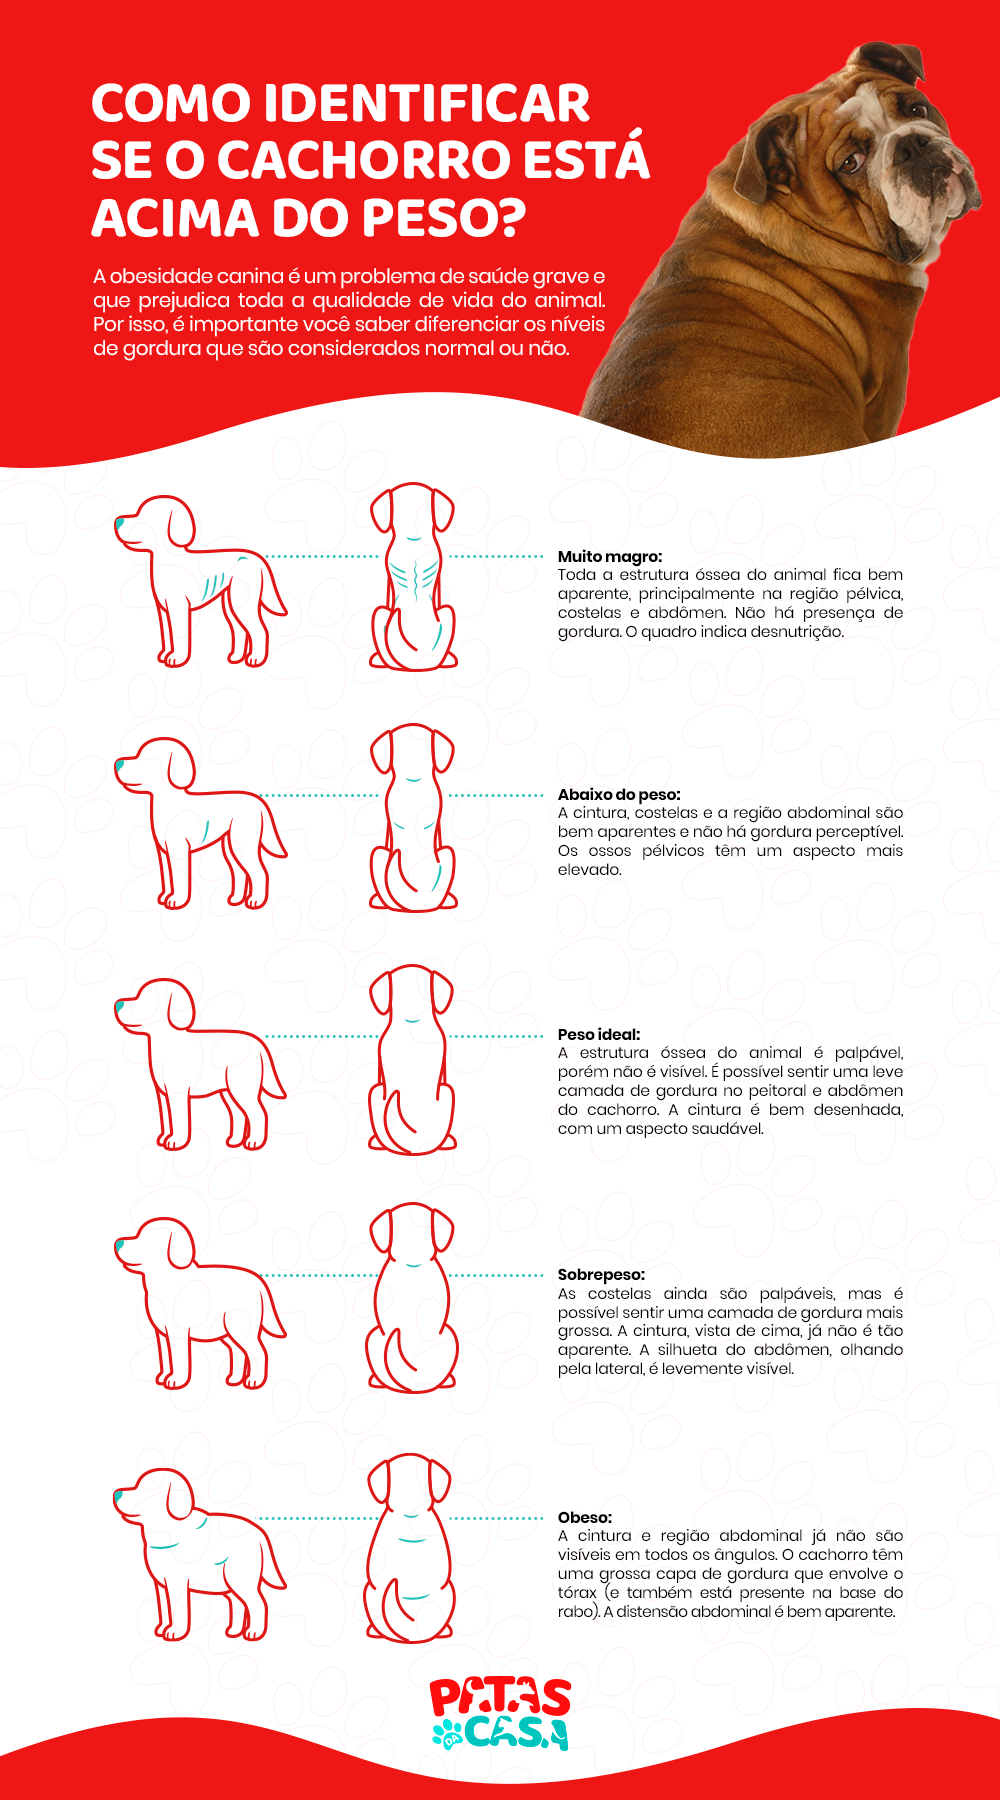  개 비만: 인포그래픽은 비만 개와 건강한 동물을 구별하는 방법을 알려줍니다.